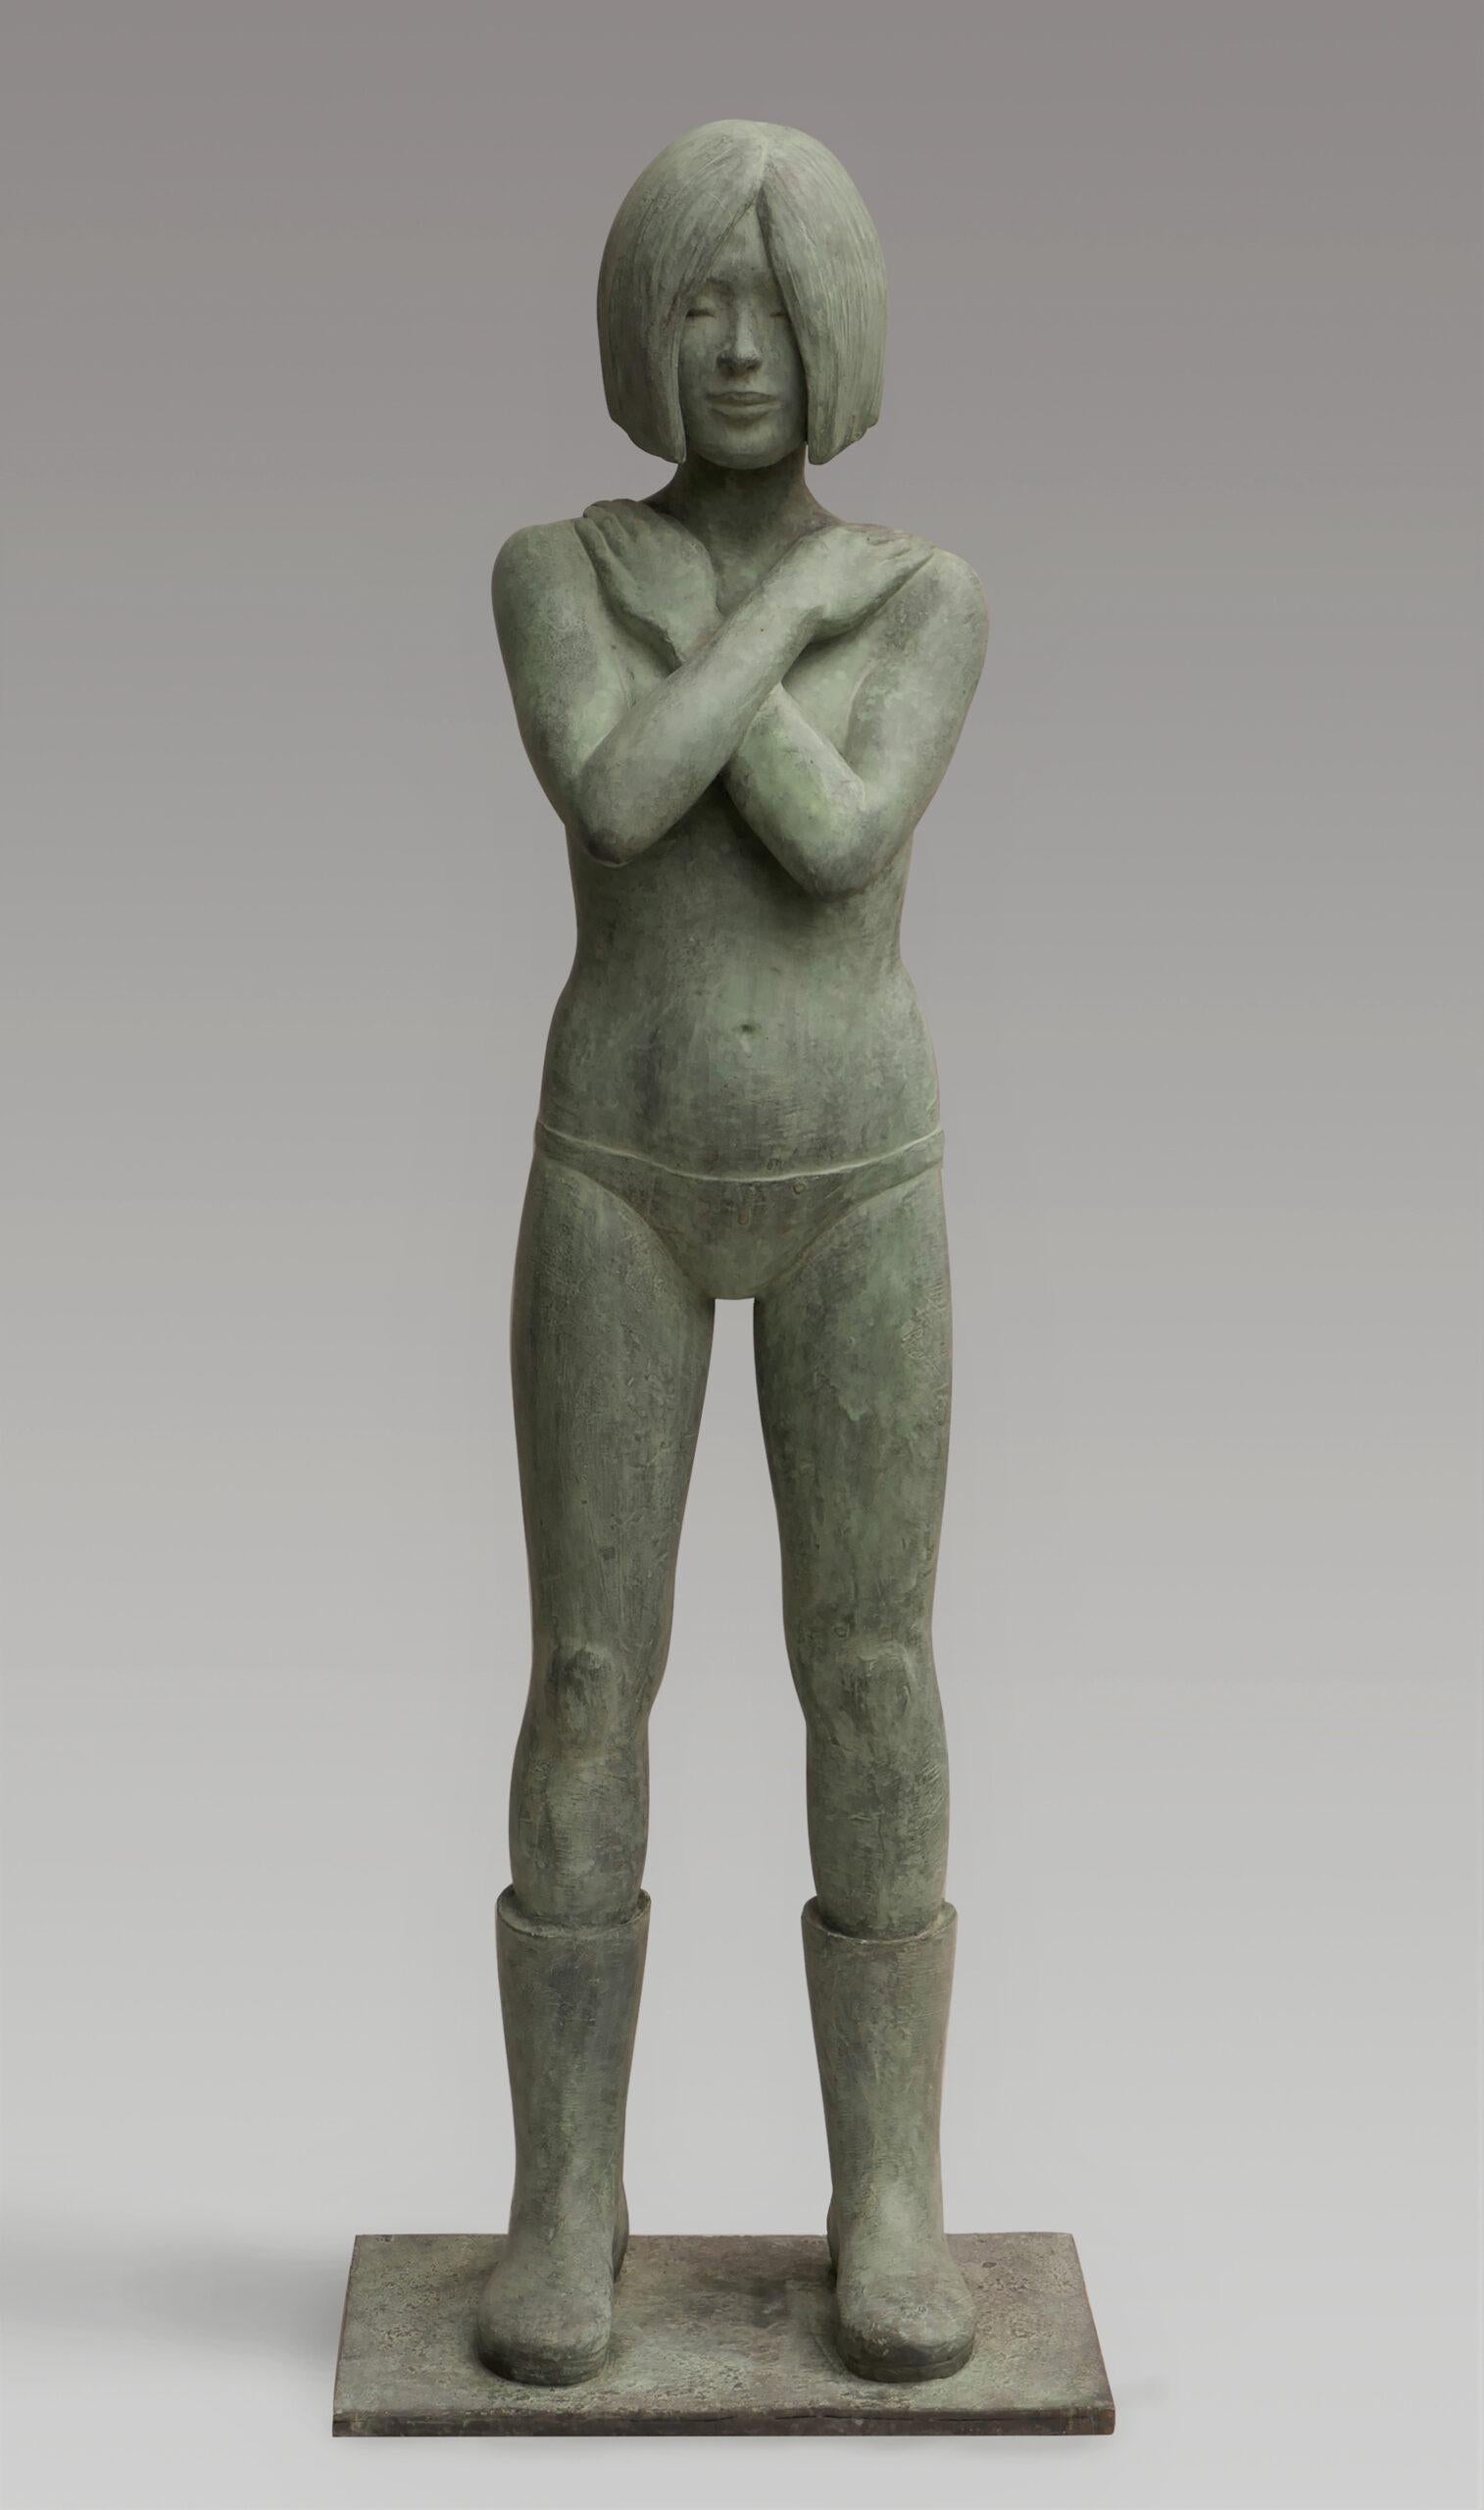 Kaplaarzen - Bottes Wellies en bronze - Sculpture - Jeune fille contemporaine en stock - Or Nude Sculpture par Erwin Meijer